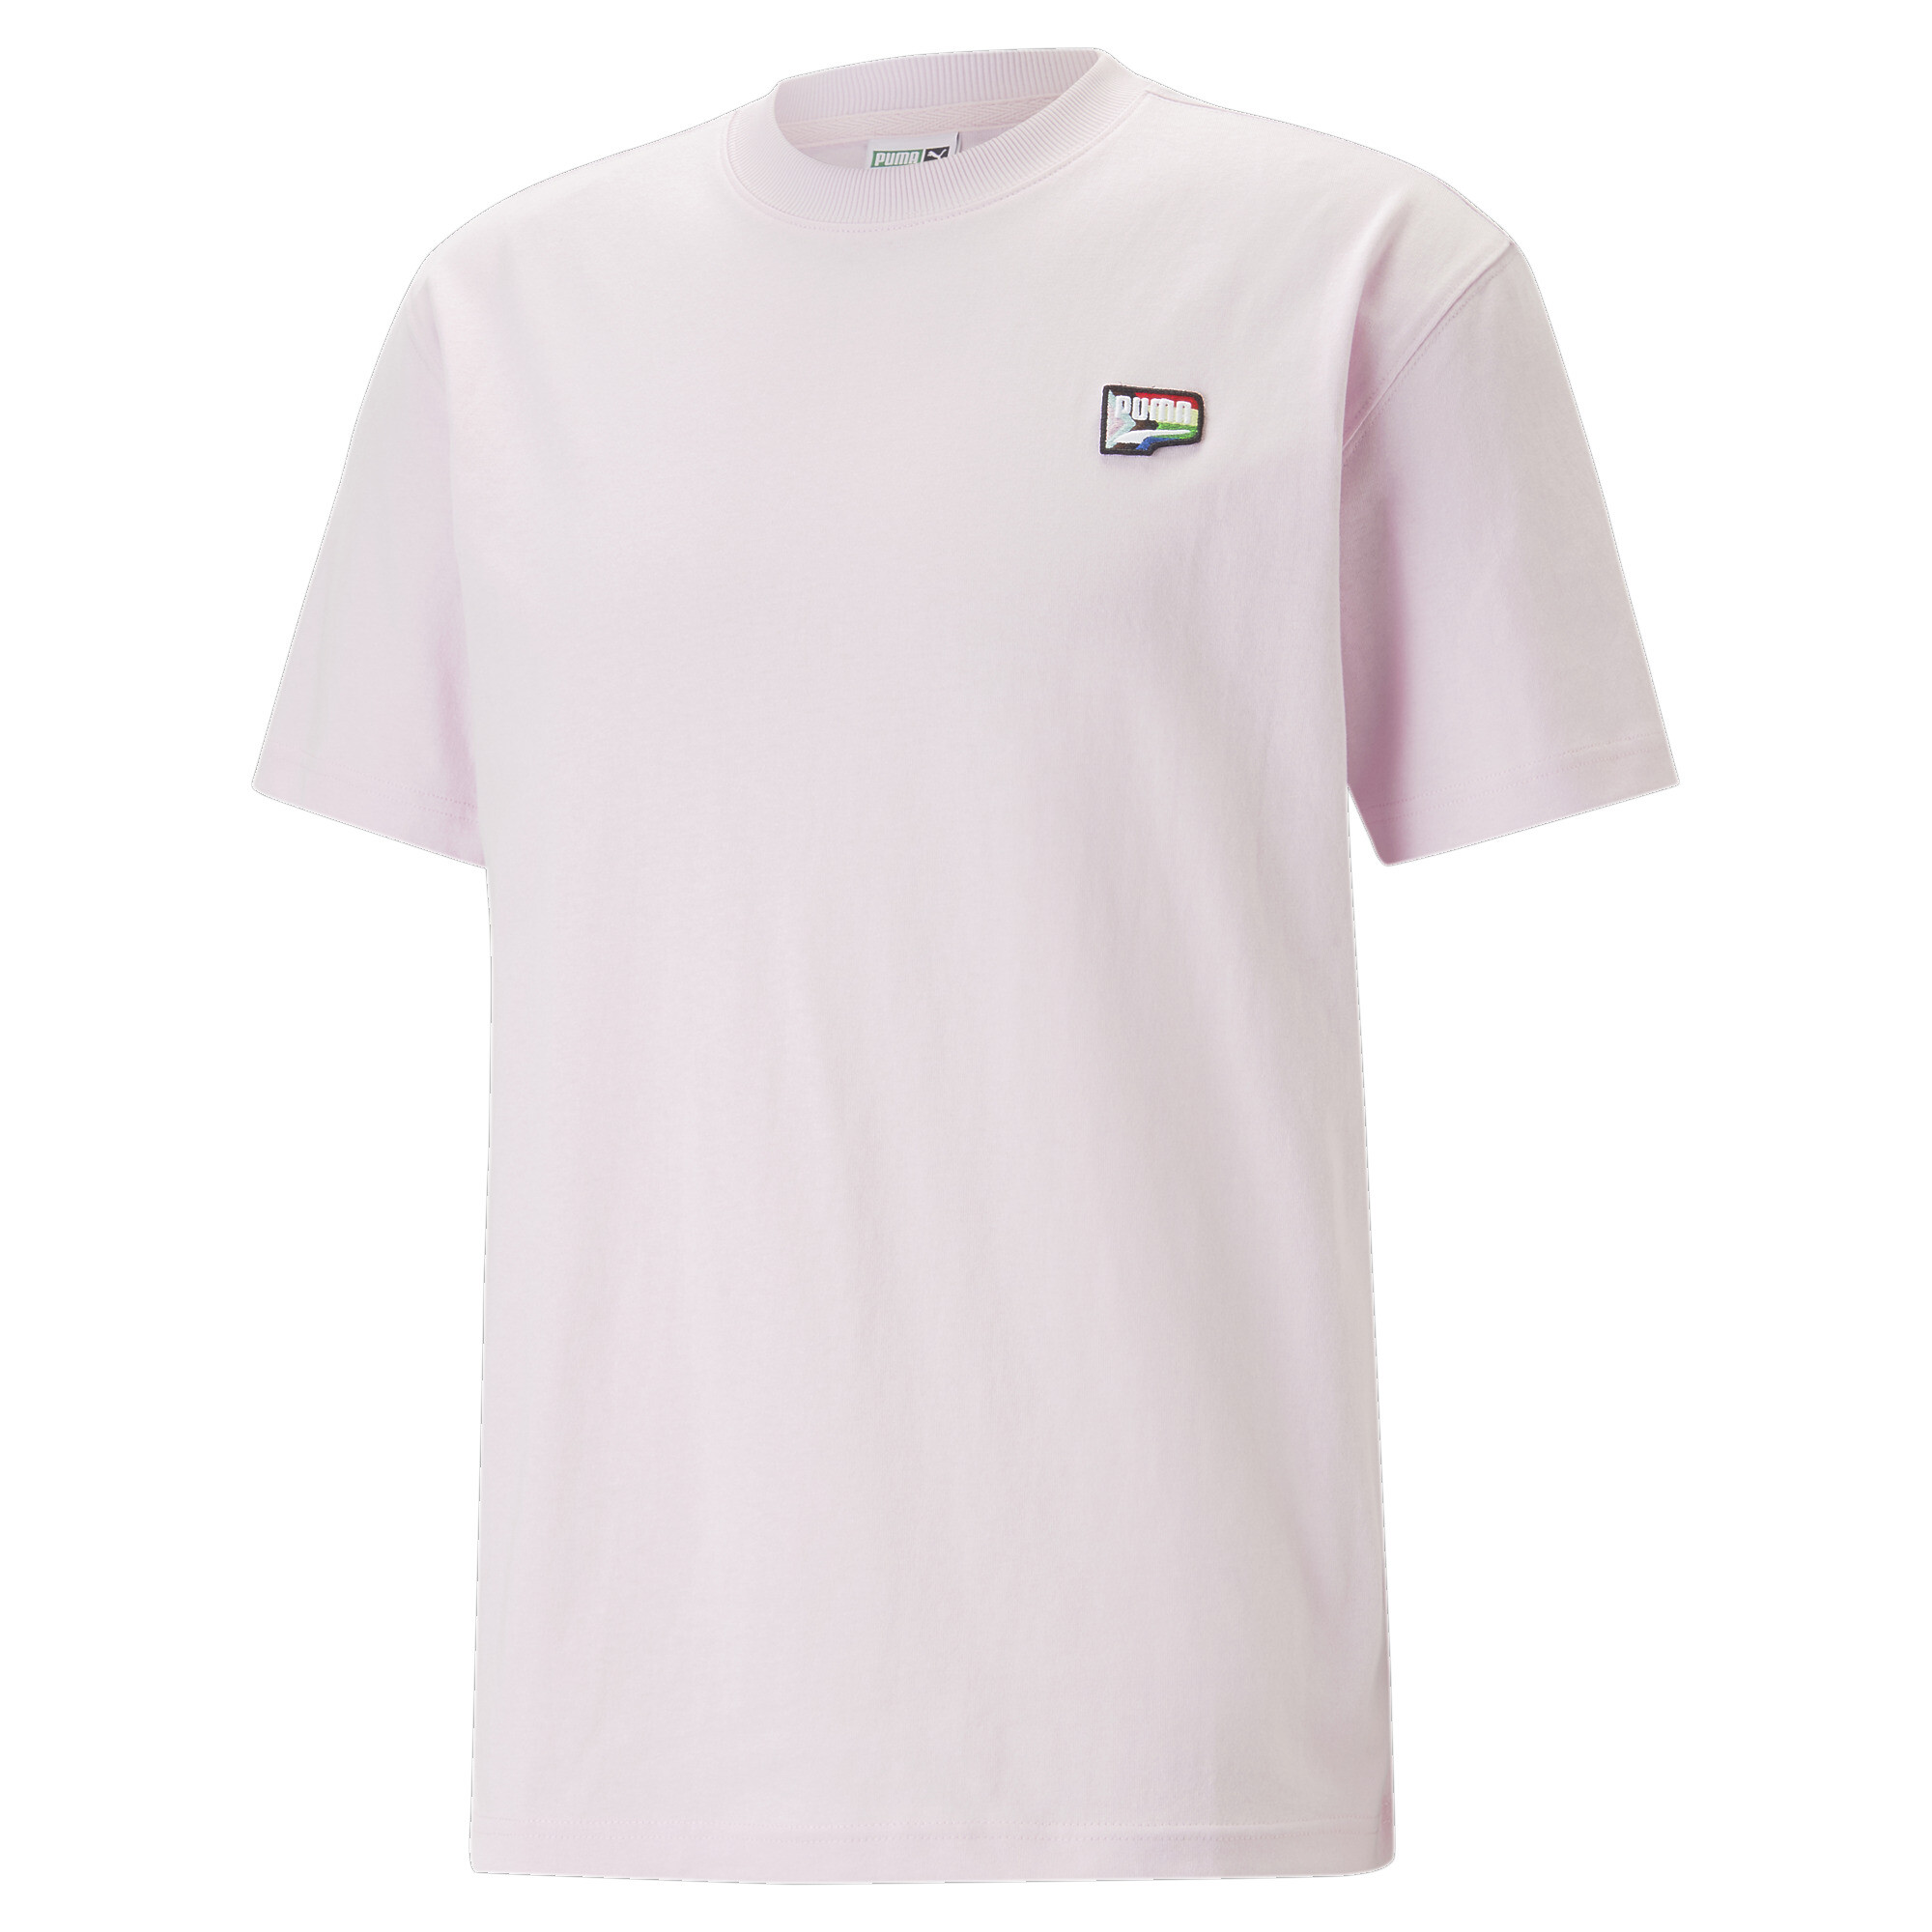 ＜プーマ公式通販＞ プーマ メンズ アップタウン グラフィック Tシャツ メンズ PUMA Black ｜PUMA.com